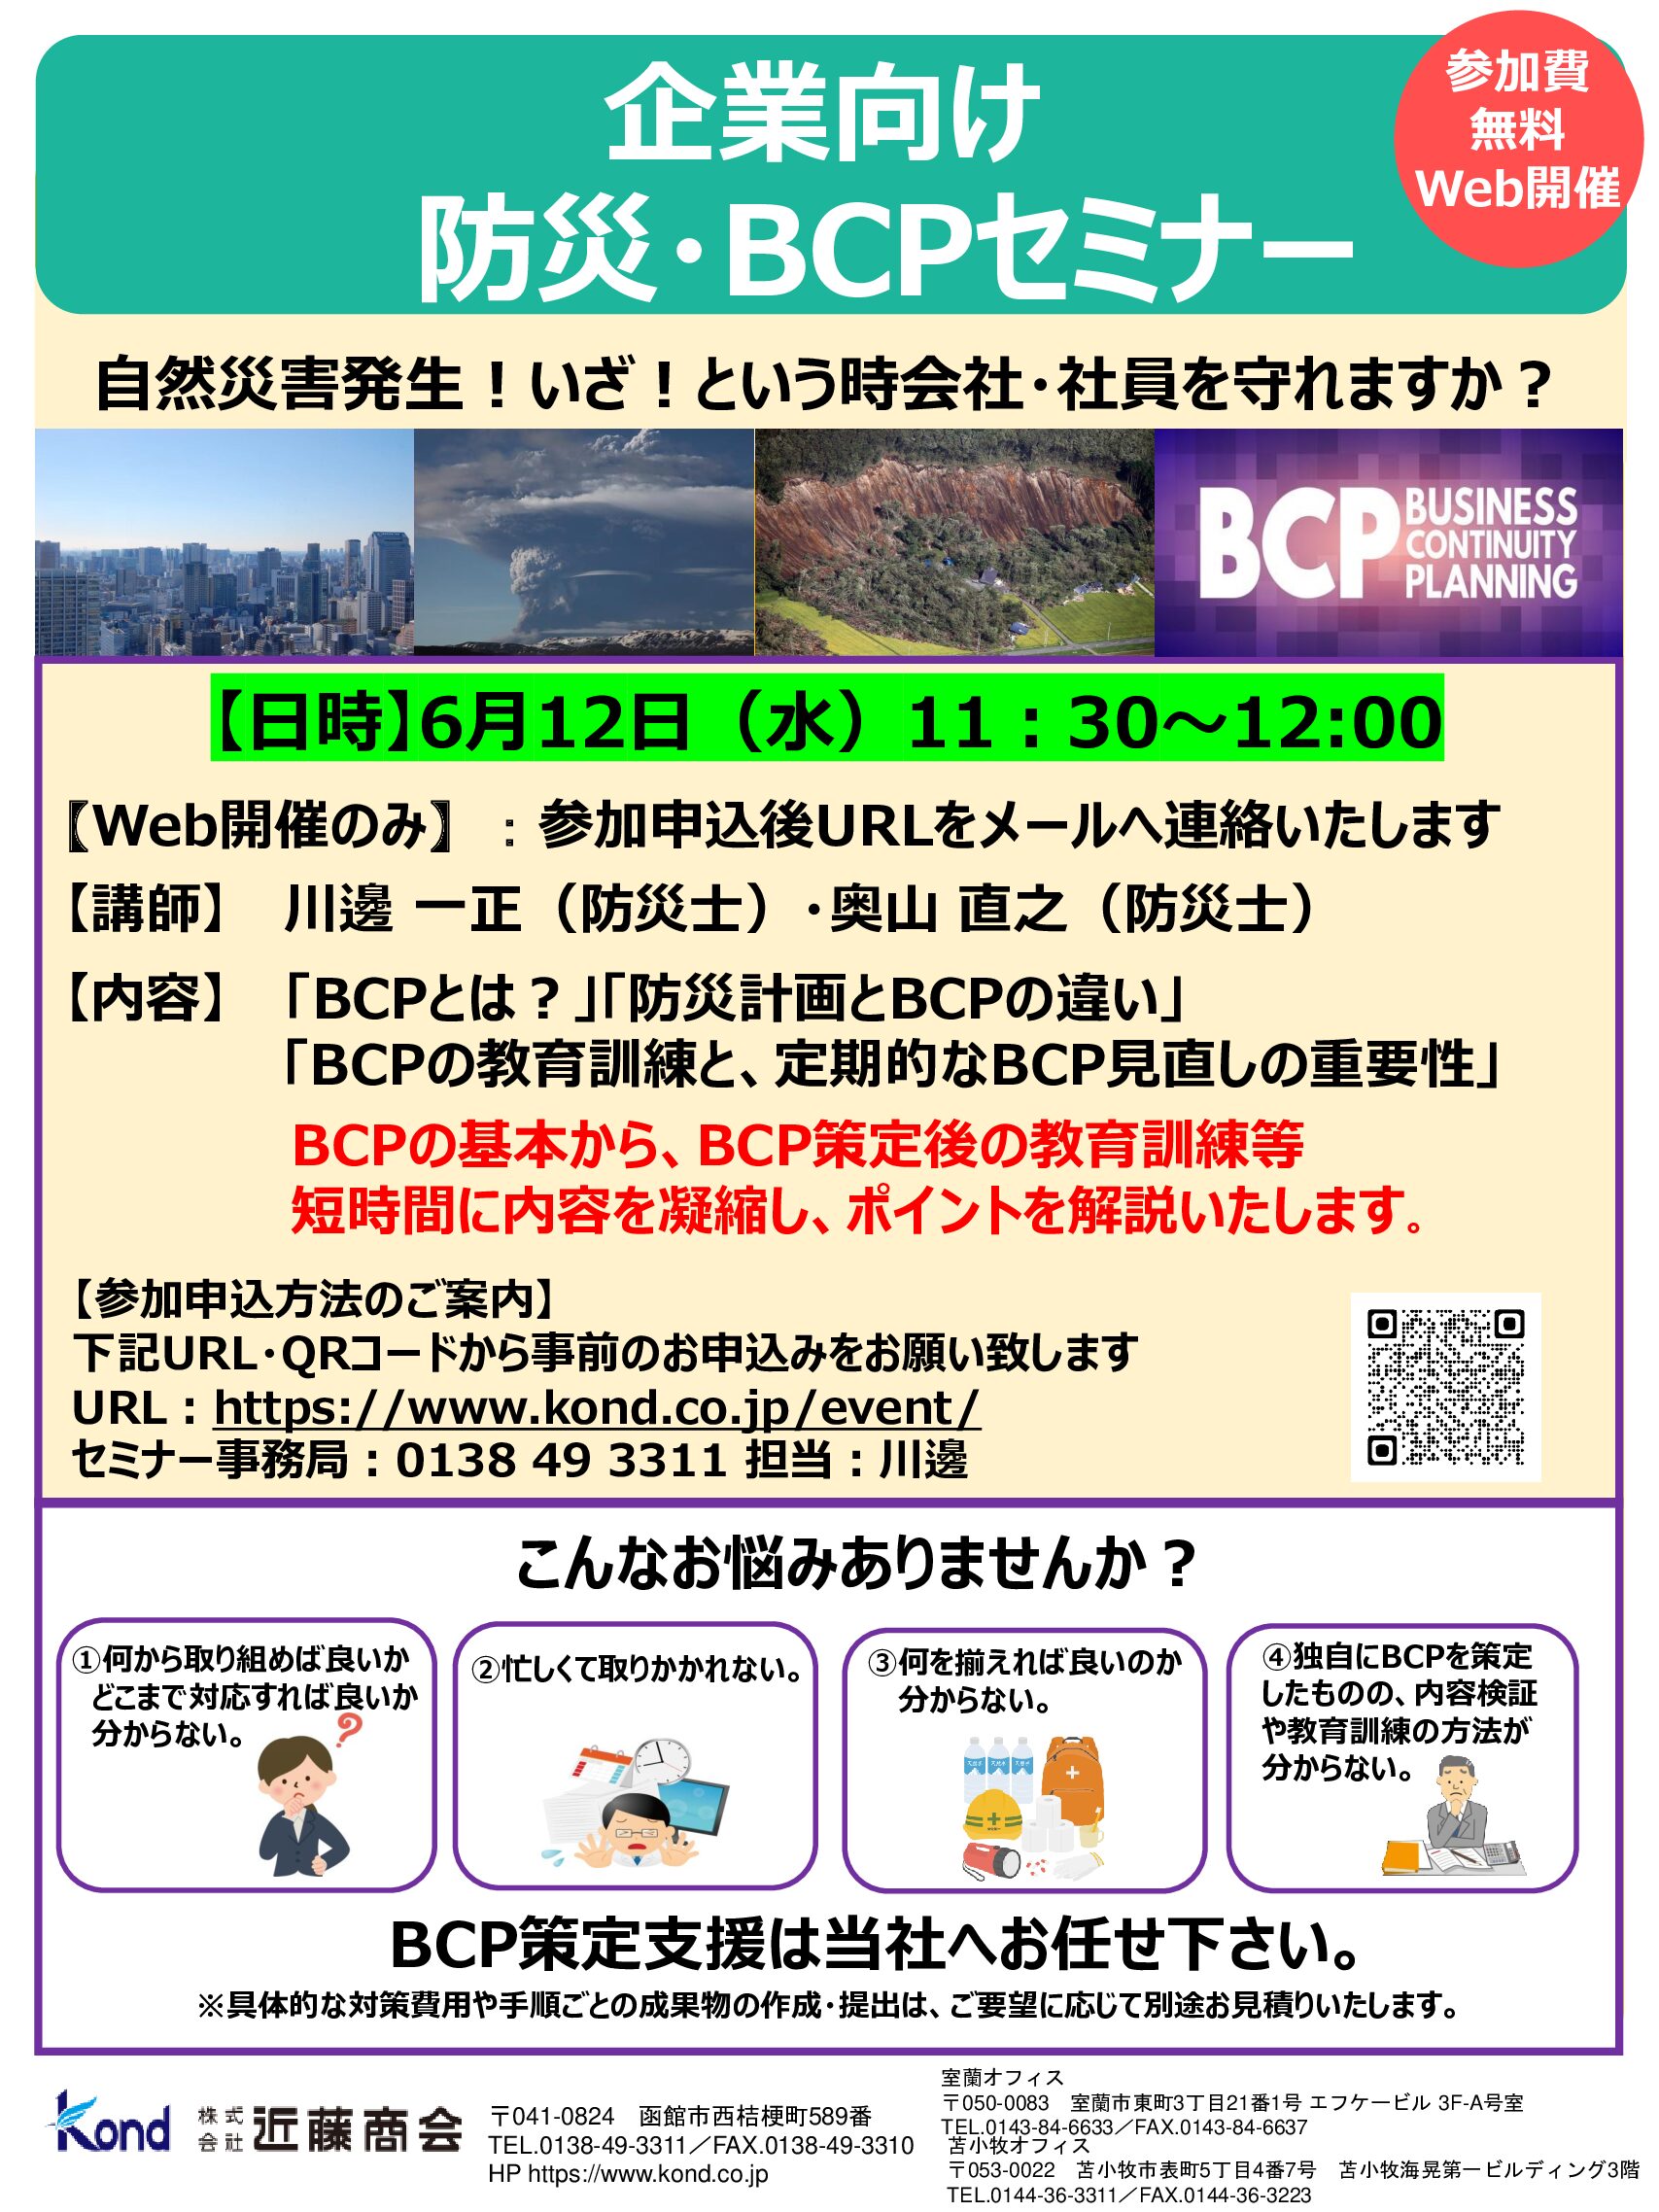 6/12(水) 企業向け防災・BCPセミナーのお知らせ！